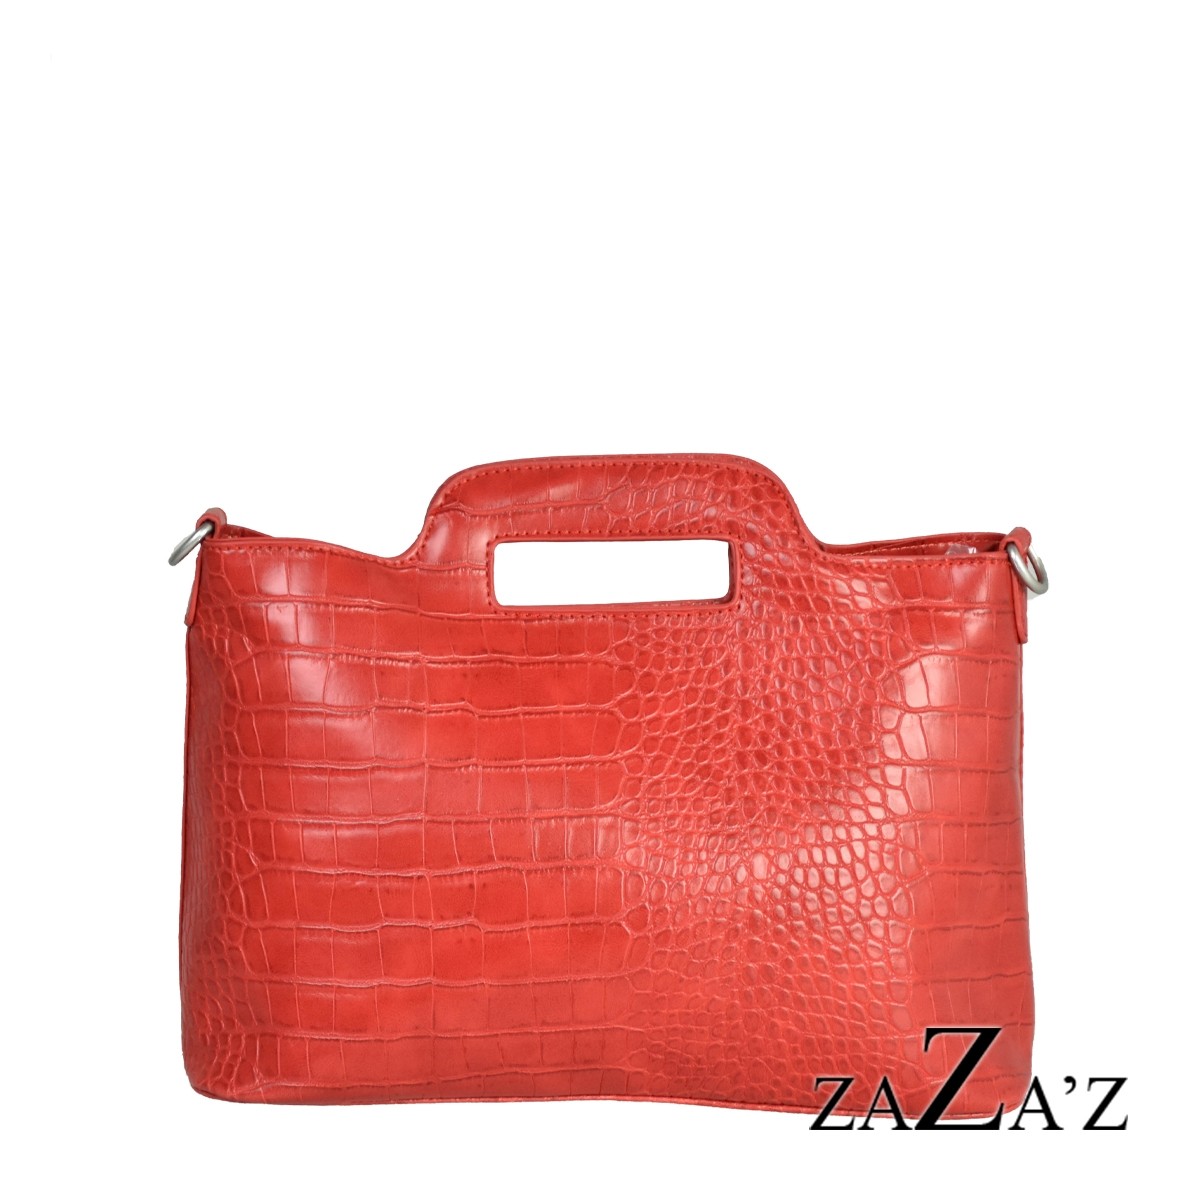 Leather Look tas Red zaZa'z